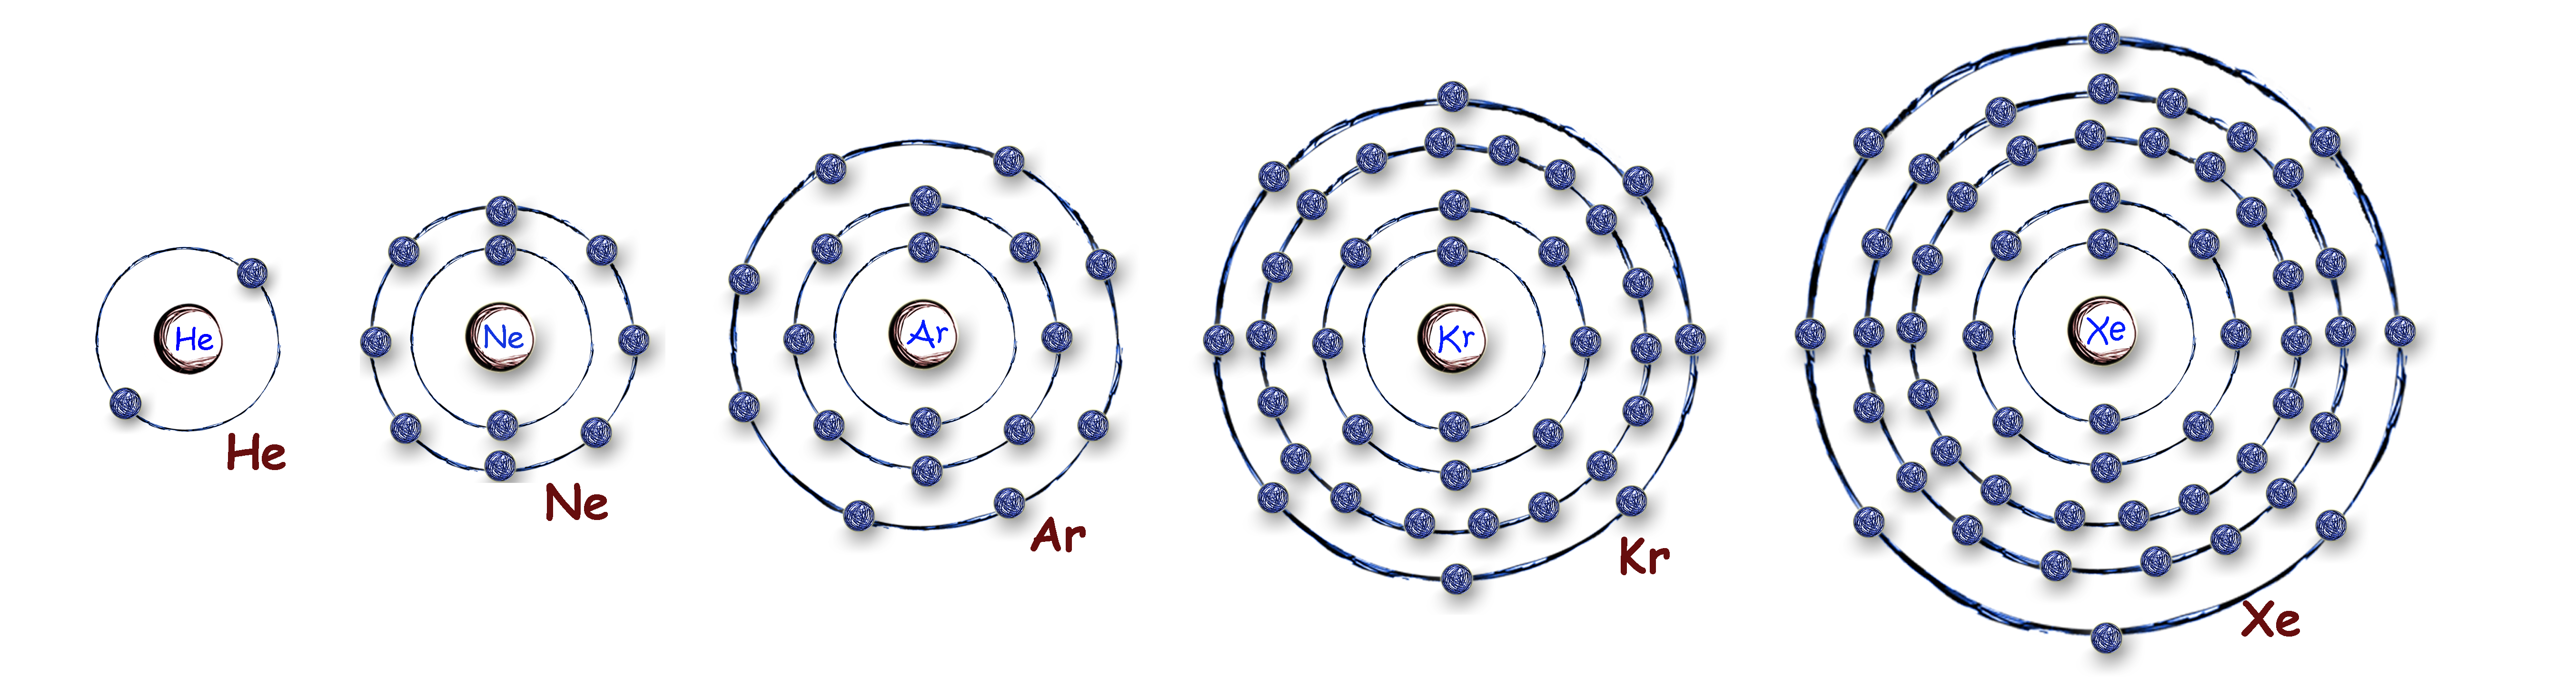 Планетарная модель гелия. Планетарная модель атома гелия. Атомная модель гелия. Модель строения атома гелия. Атом гелия строение атома.